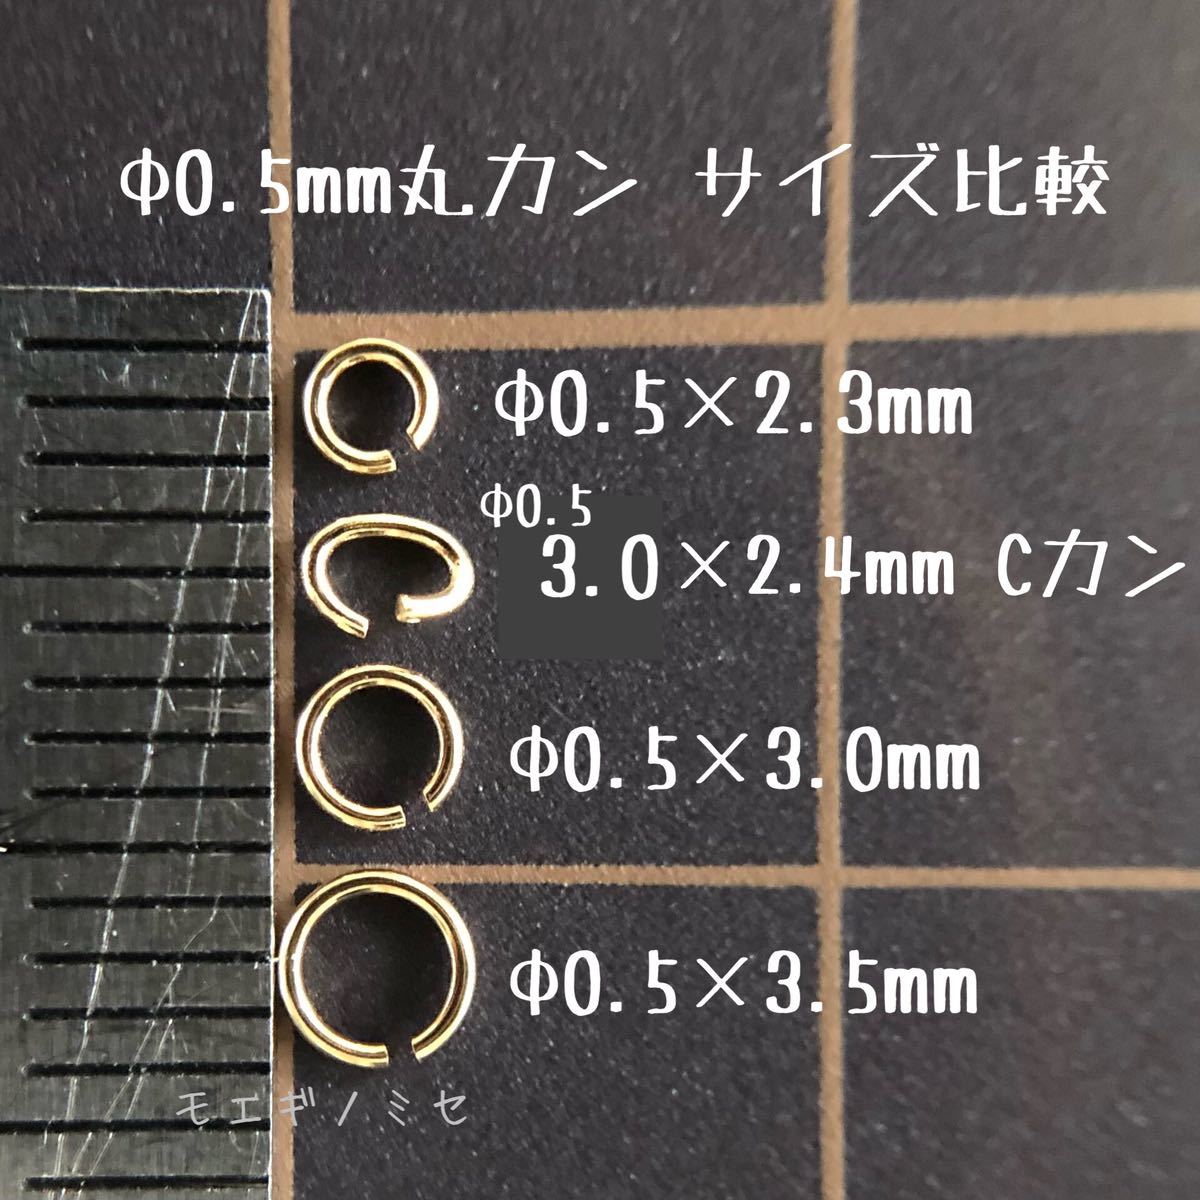 18金丸カン 0.5×3.0mm 1個売り 日本製 k18アクセサリーパーツマルカン18k 素材 線径0.5mm 外径3.0mm_画像3